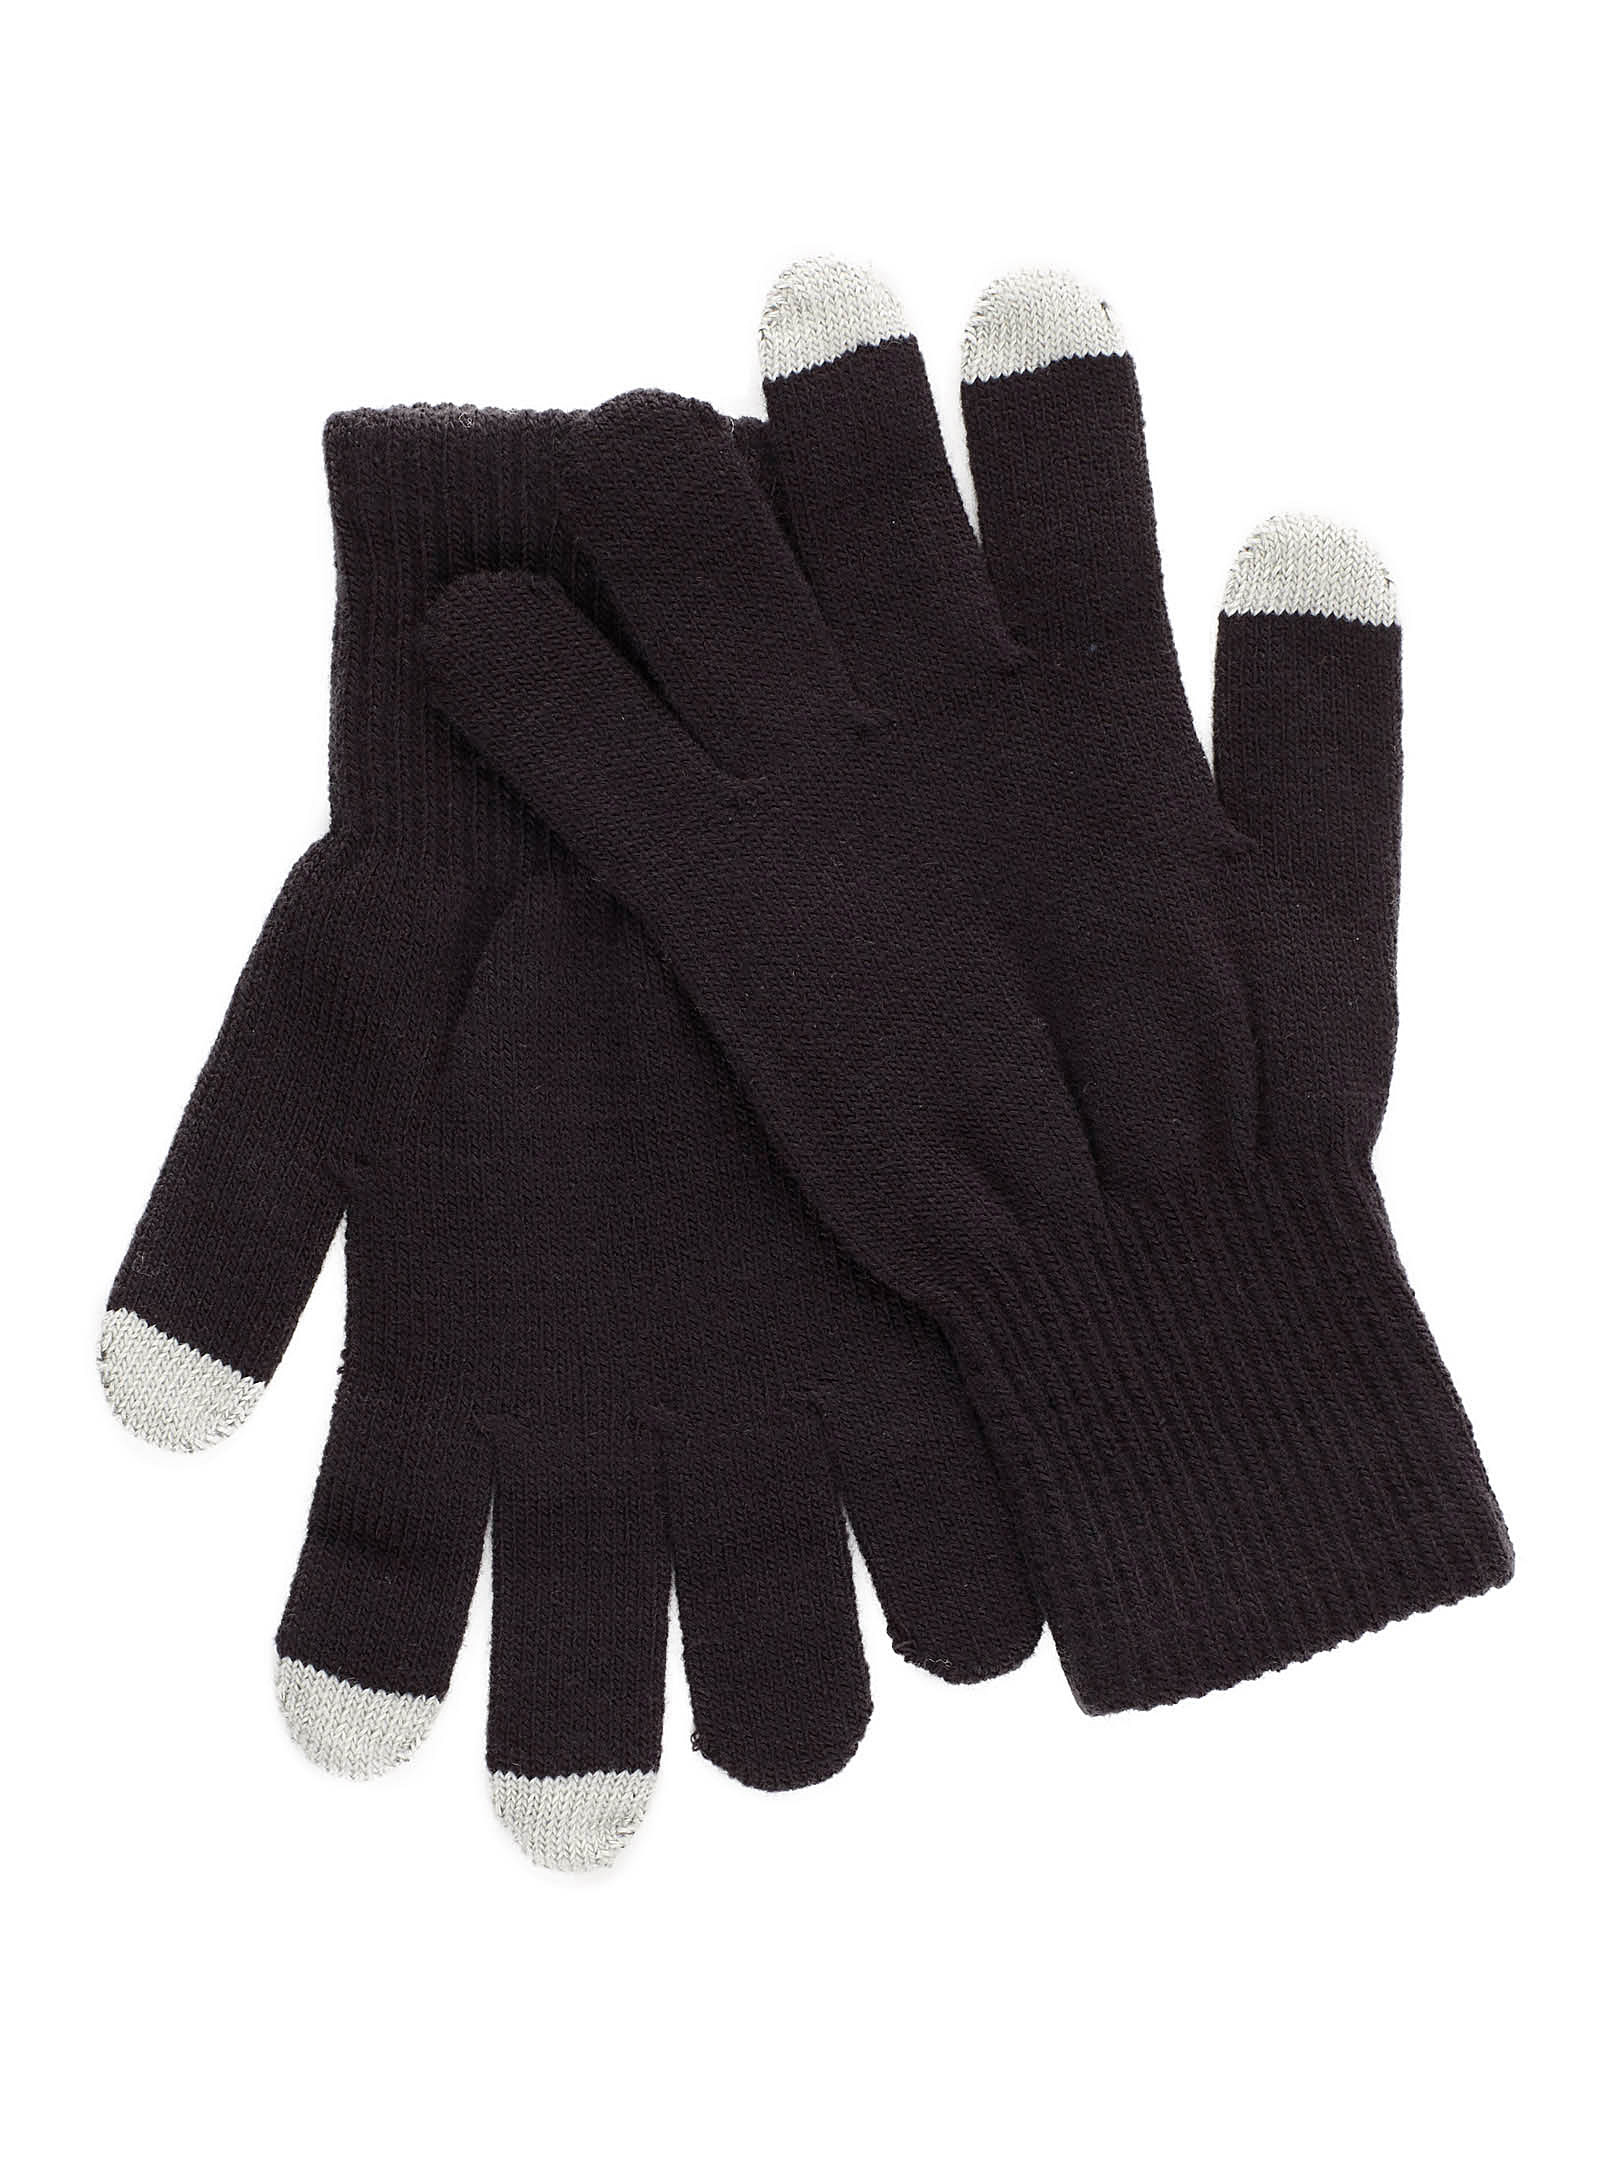 Le 31 - Men's Ultralight techno gloves